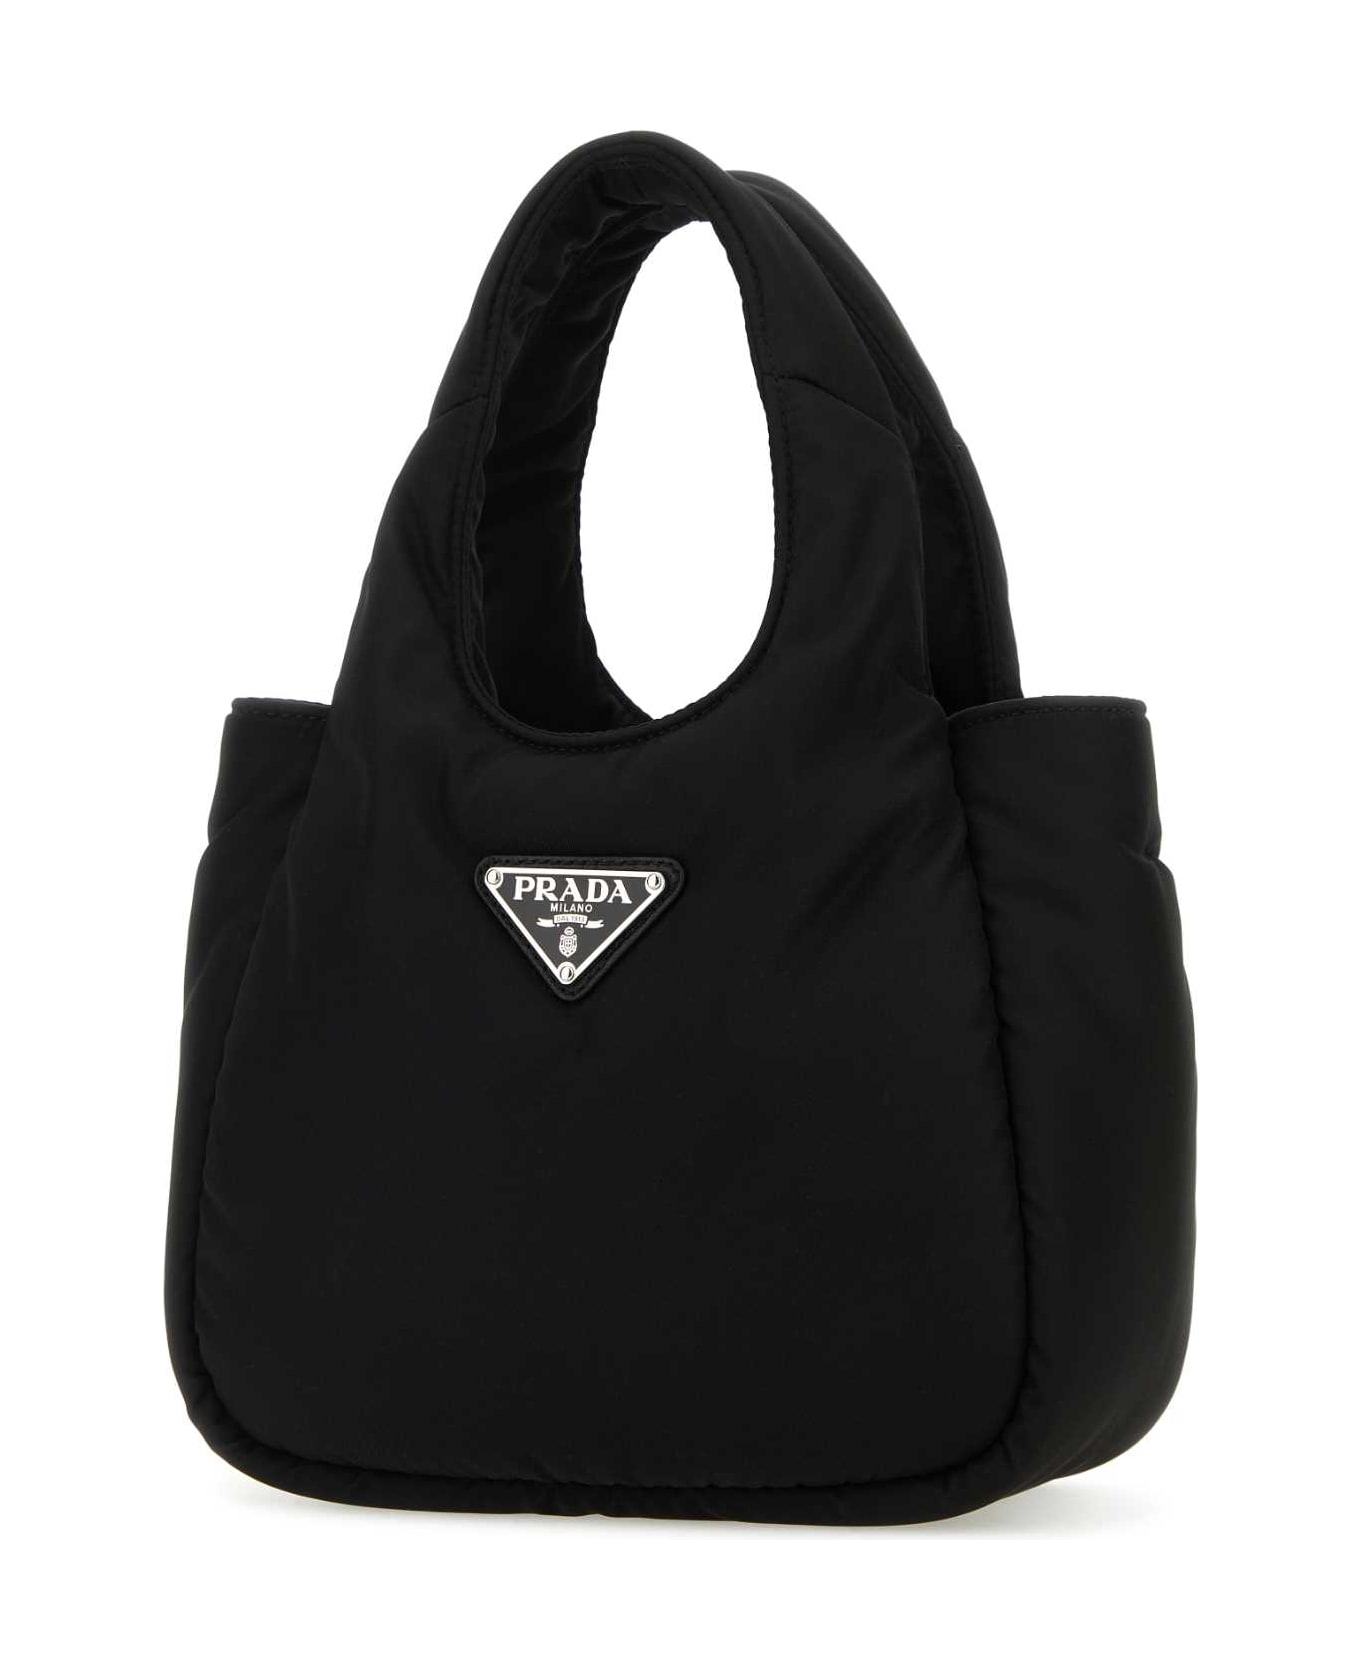 Prada Black Re-nylon Soft Handbag - NERO